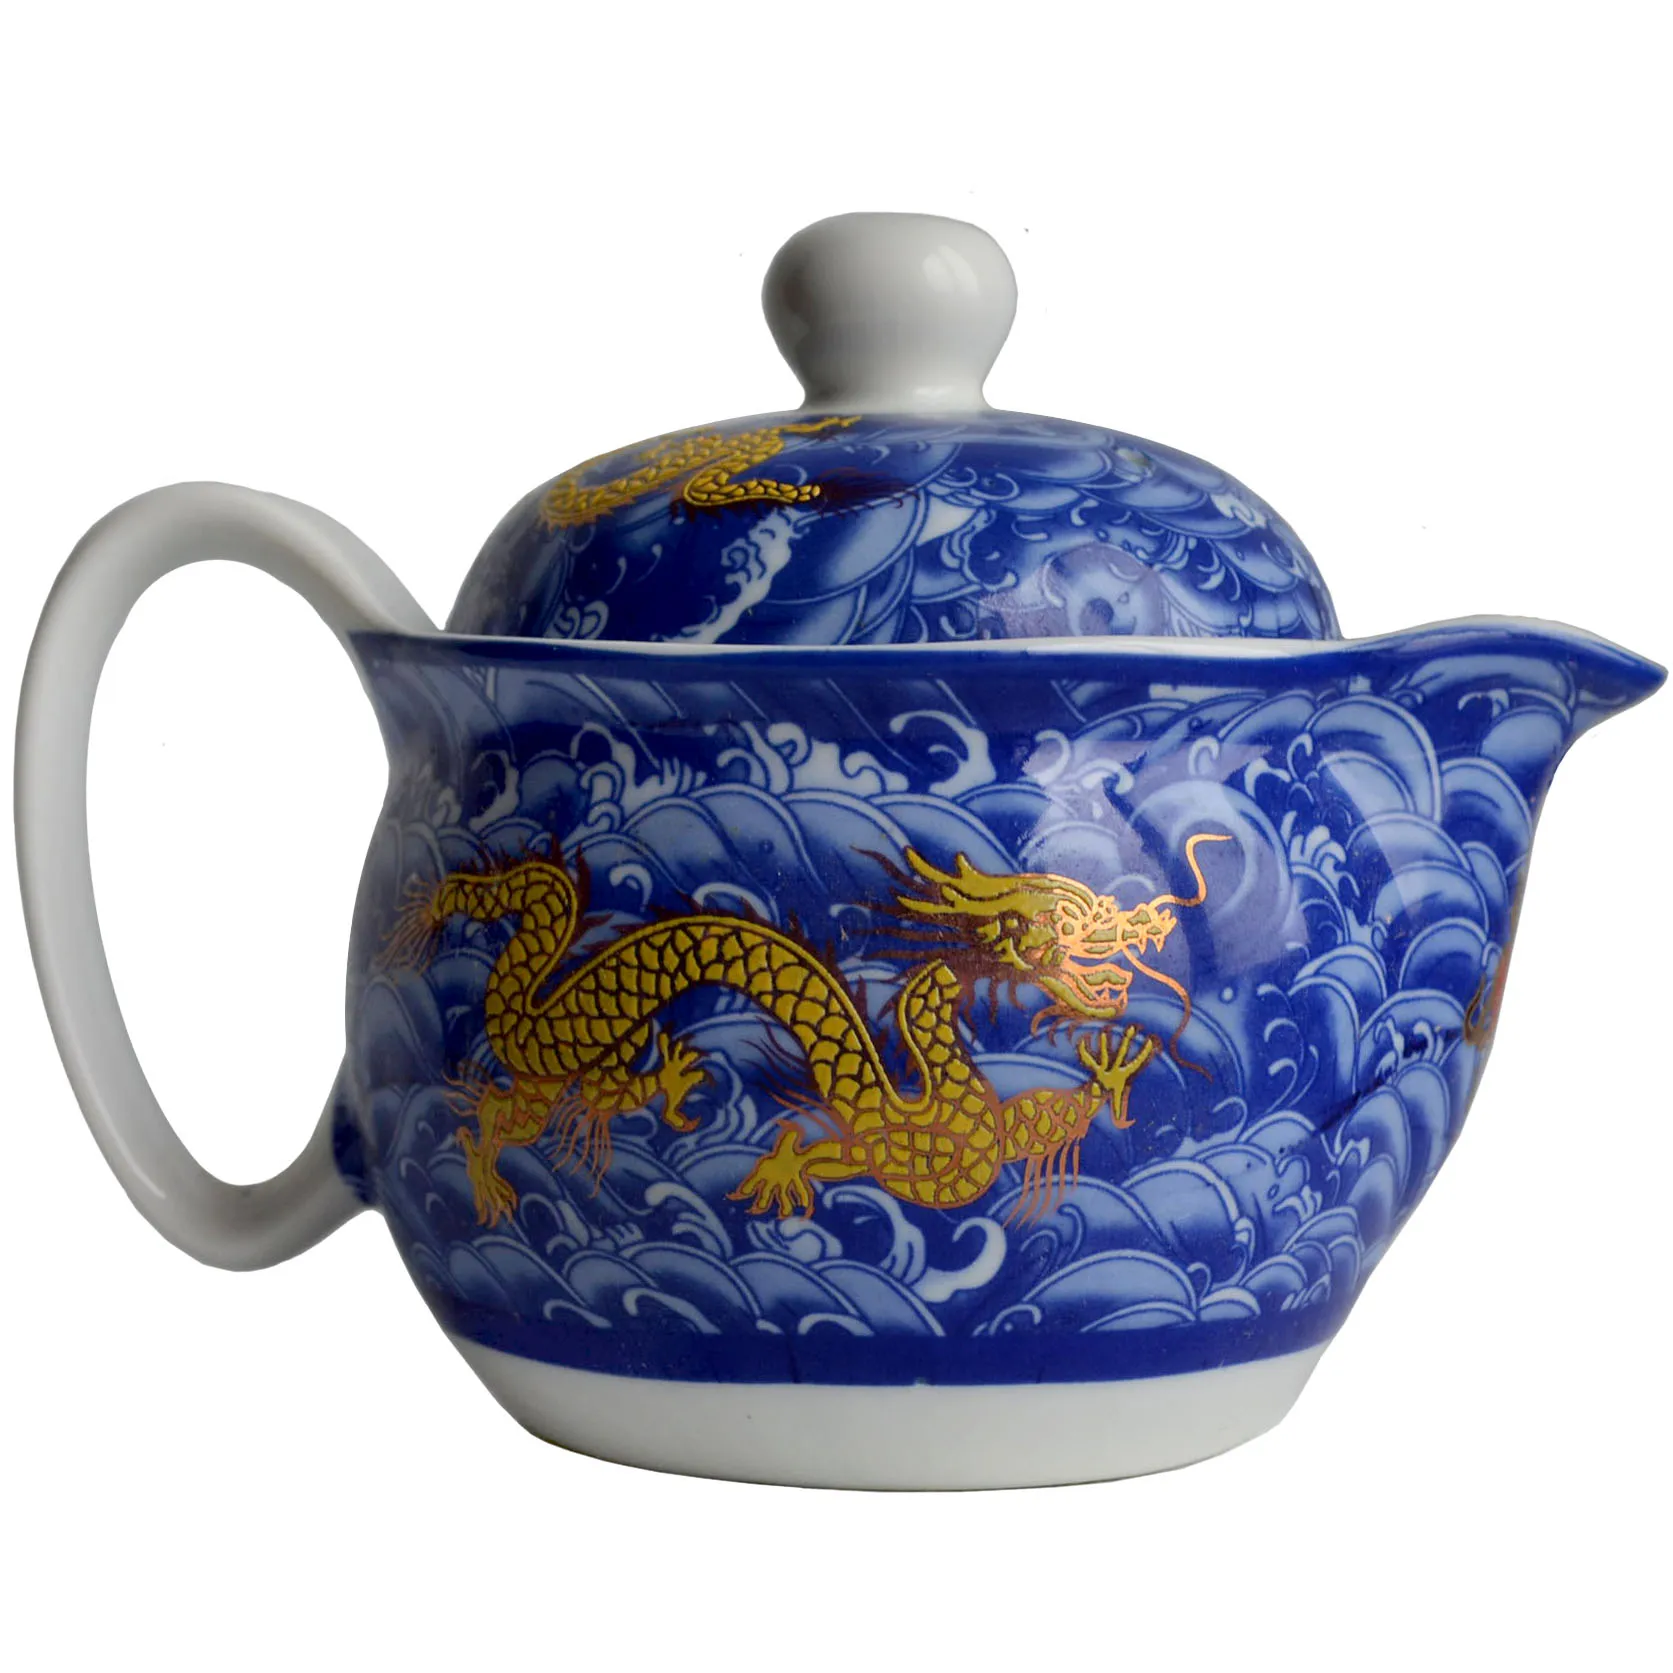 Чайный горшок 410 мл фарфоровый китайский драконы горшок из нержавеющей стали ситечко для инфузий цветы чай пуэр чайник керамическая чайная посуда для дома и офиса